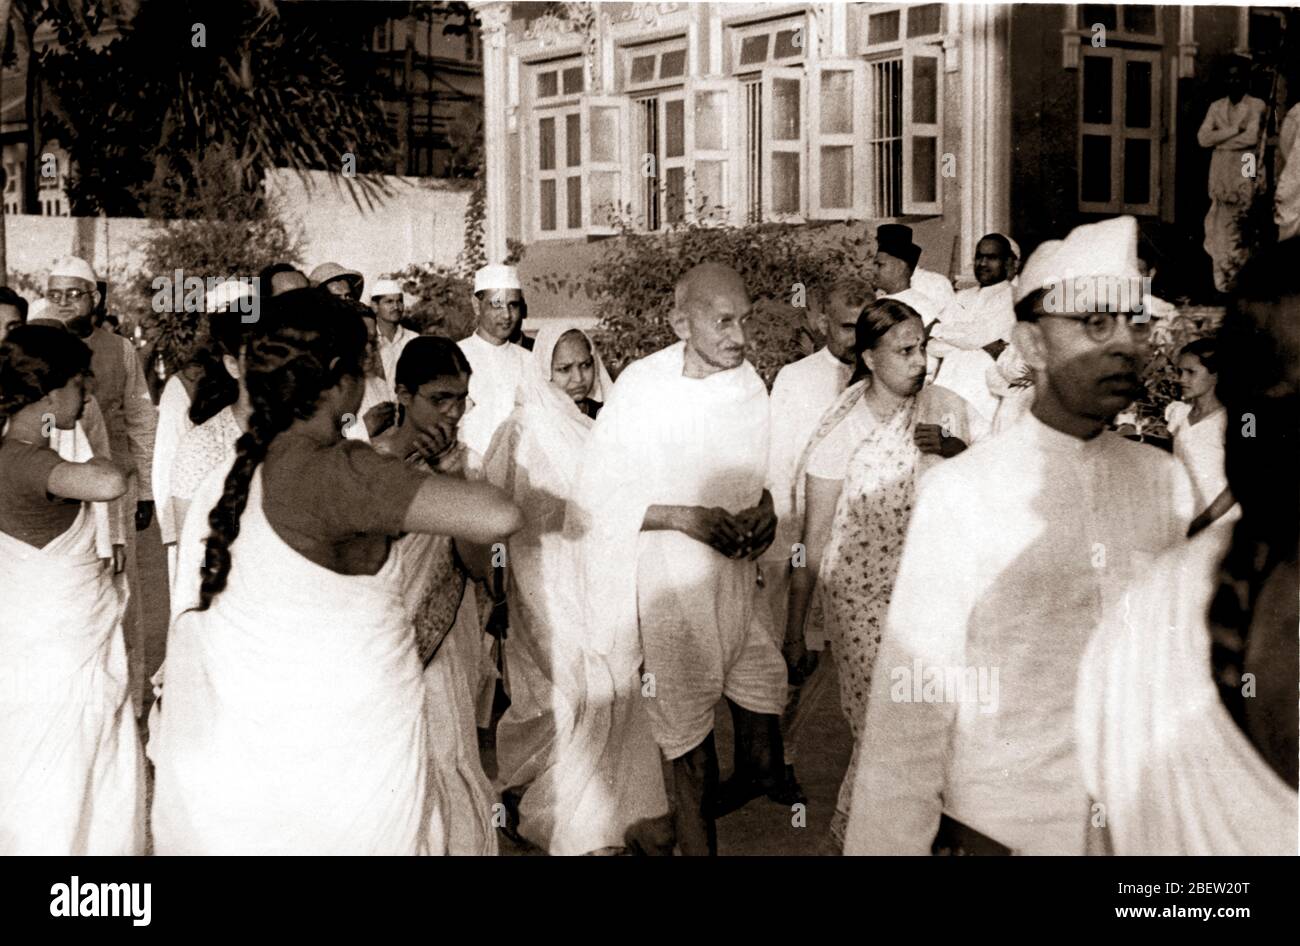 Mahatma Gandhi. Mohandas Karamchand Gandhi 2 de octubre de 1869 – 30 de enero de 1948 – fue un abogado indio, nacionalista anticolonial y político-eticista, que empleó la resistencia no-nonova para liderar la exitosa campaña por la independencia de la India del dominio británico. Foto de stock